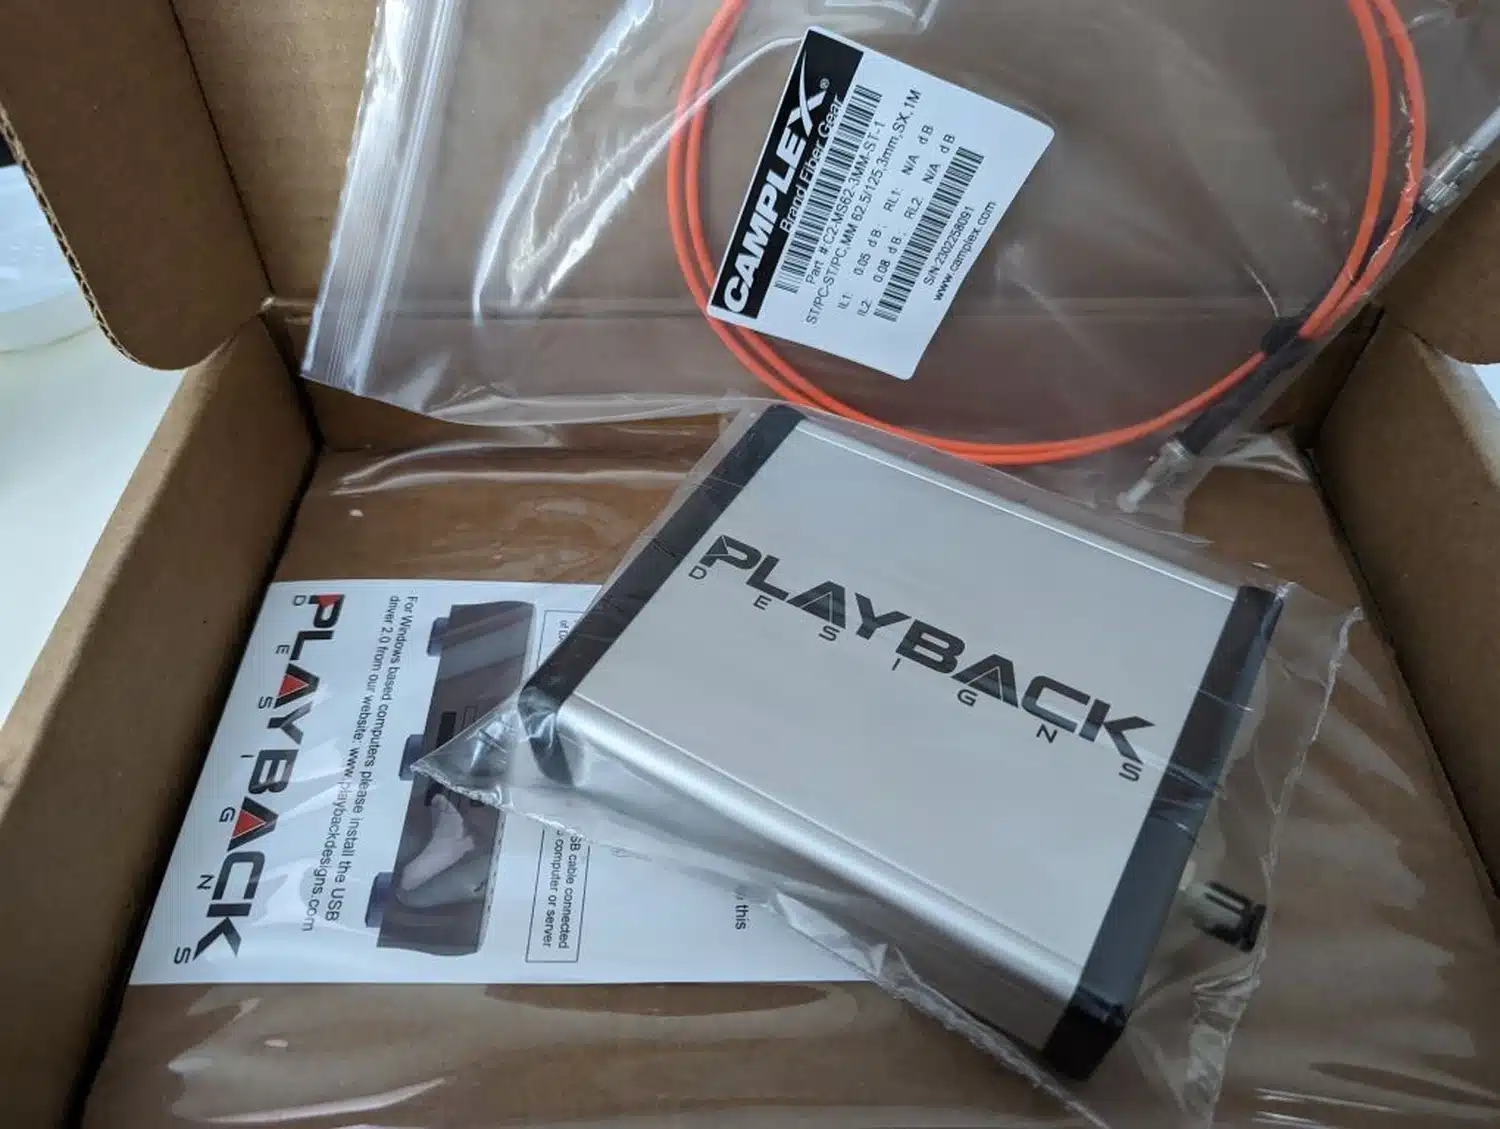 Boîte en carton ouverte contenant une interface USB-X4 de Playback Designs ainsi que son câble fibre optique orange, tous deux scellés dans leur sac en plastique transparent (par 1877.audio)